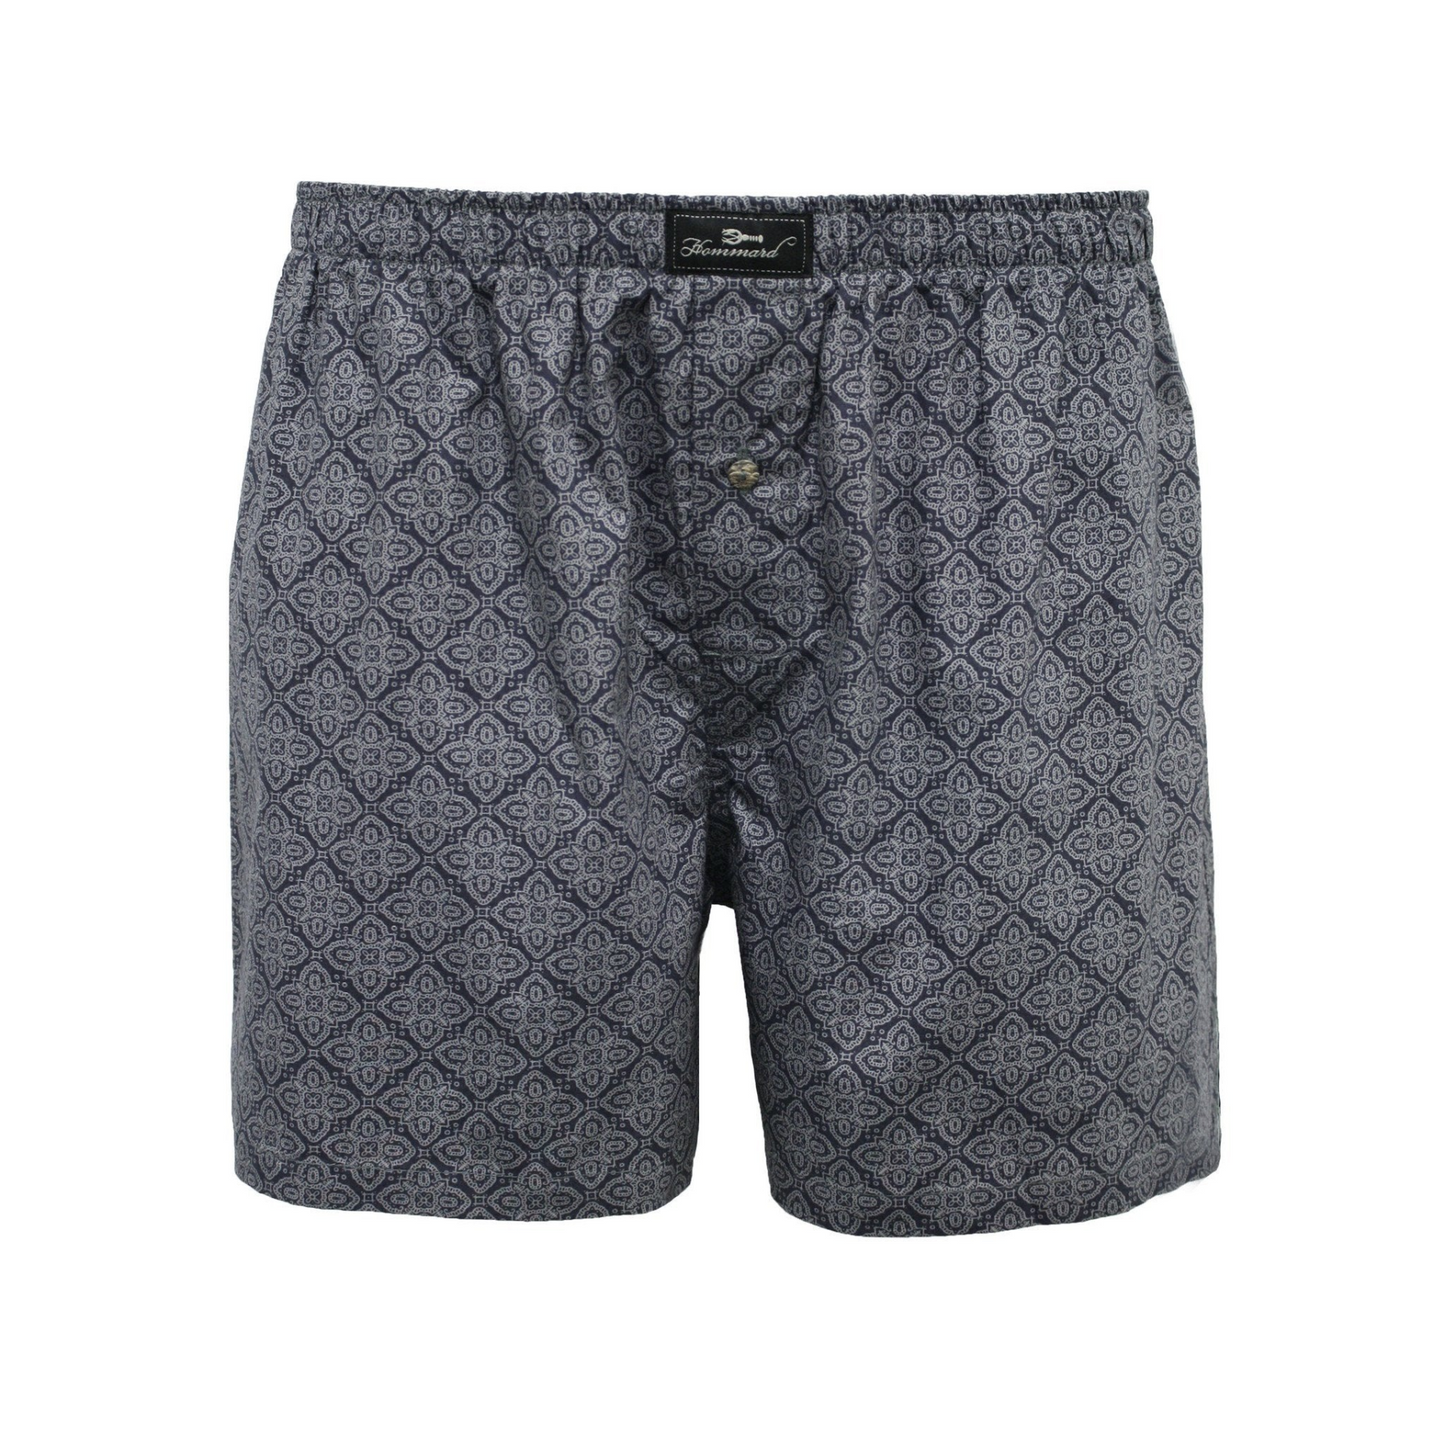 Woven Cotton Boxer Shorts Grey Paisley